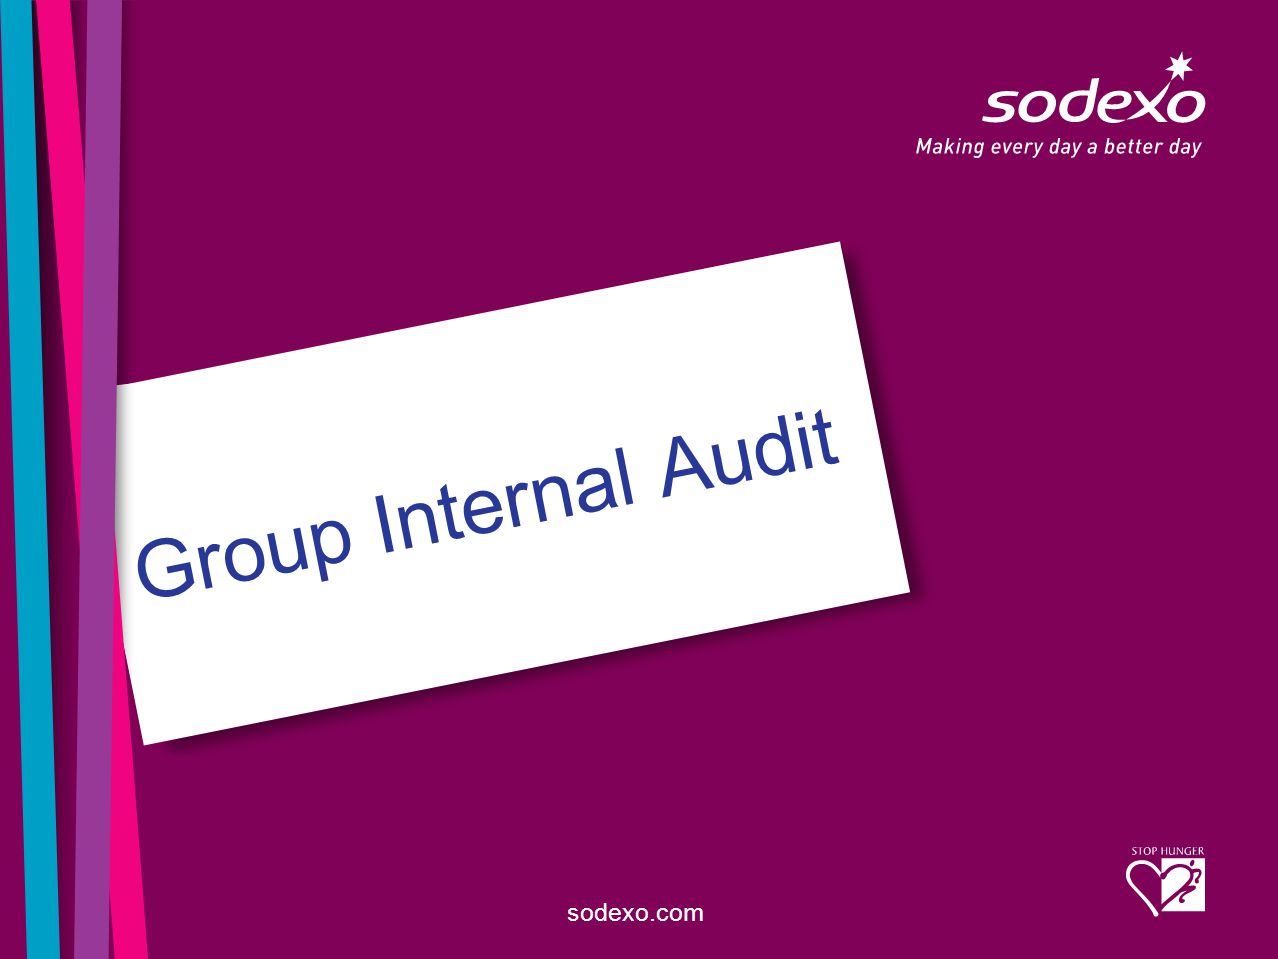 sodexo.com Group Internal Audit